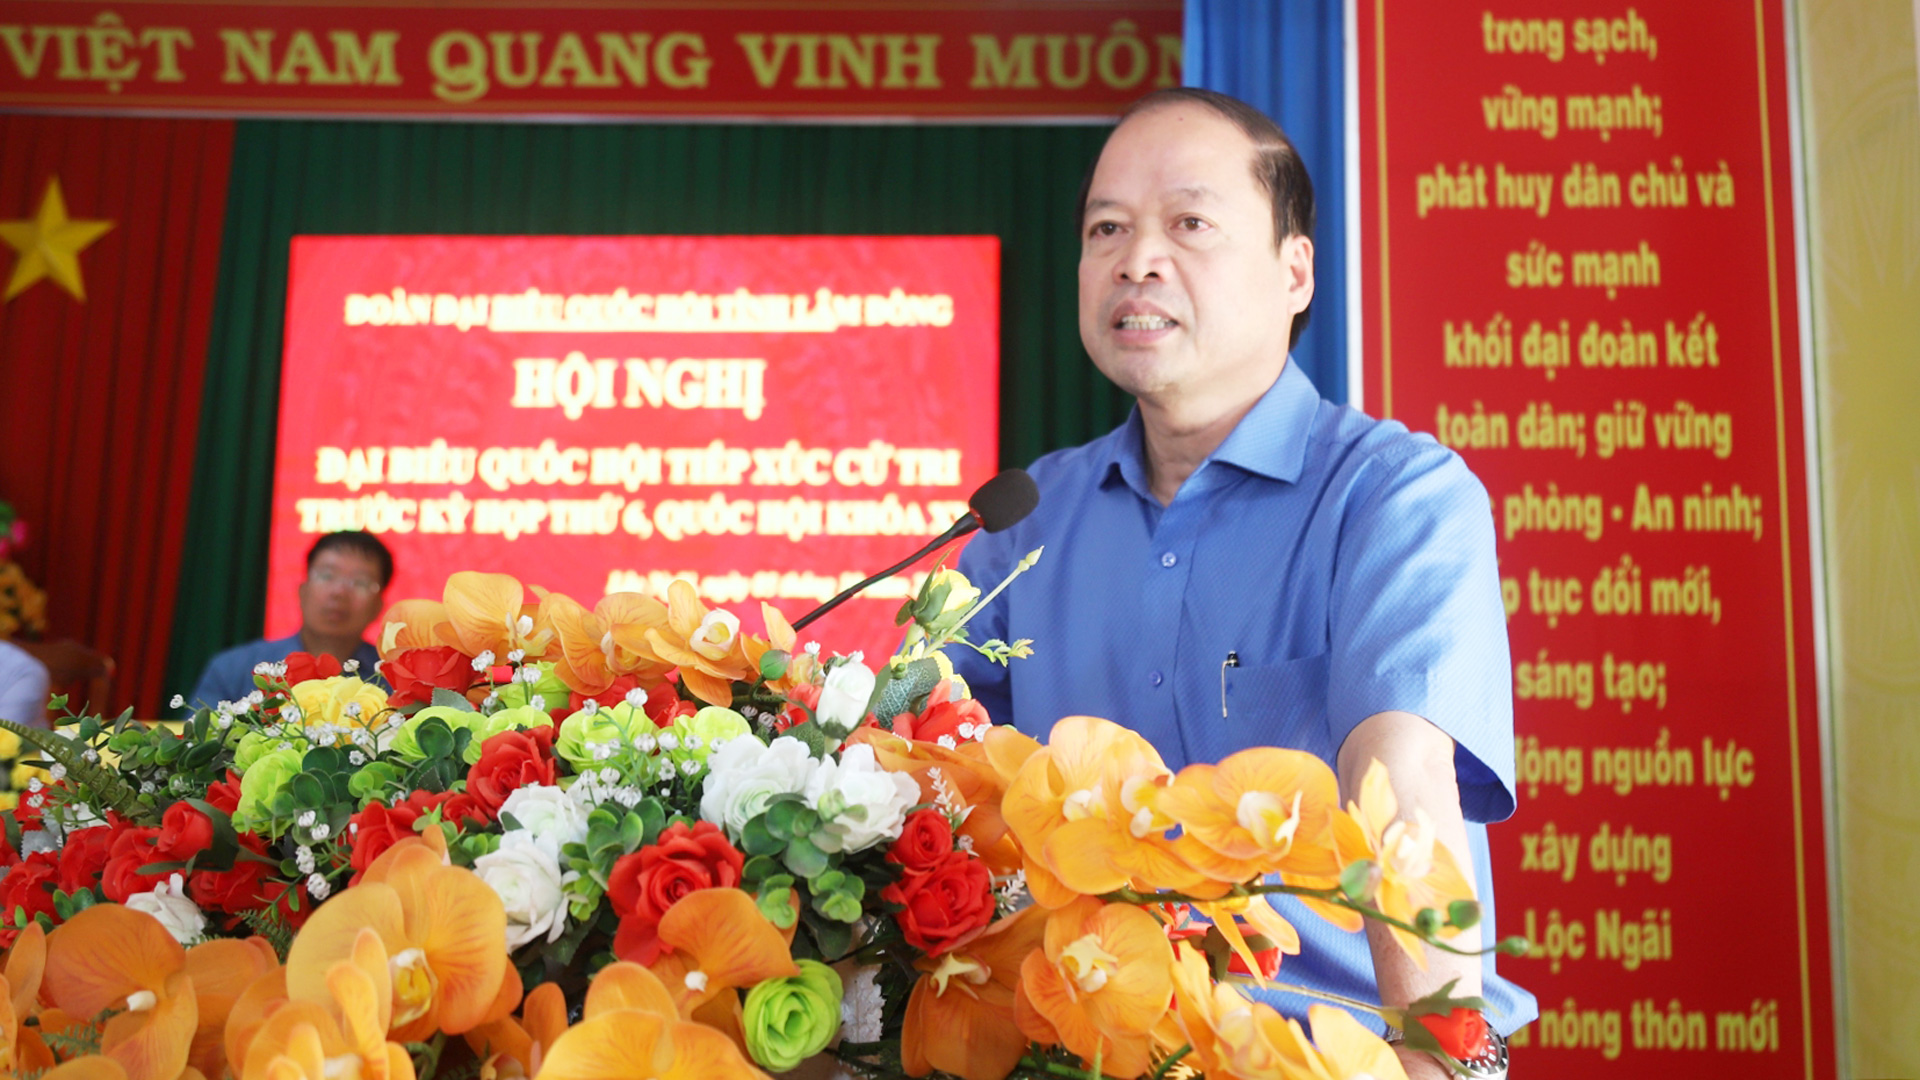 Đồng chí Nguyễn Viết Vân - Bí thư Huyện ủy Bảo Lâm thông tin đến cử tri những kết quả nổi bật trong phát triển kinh tế - xã hội của địa phương